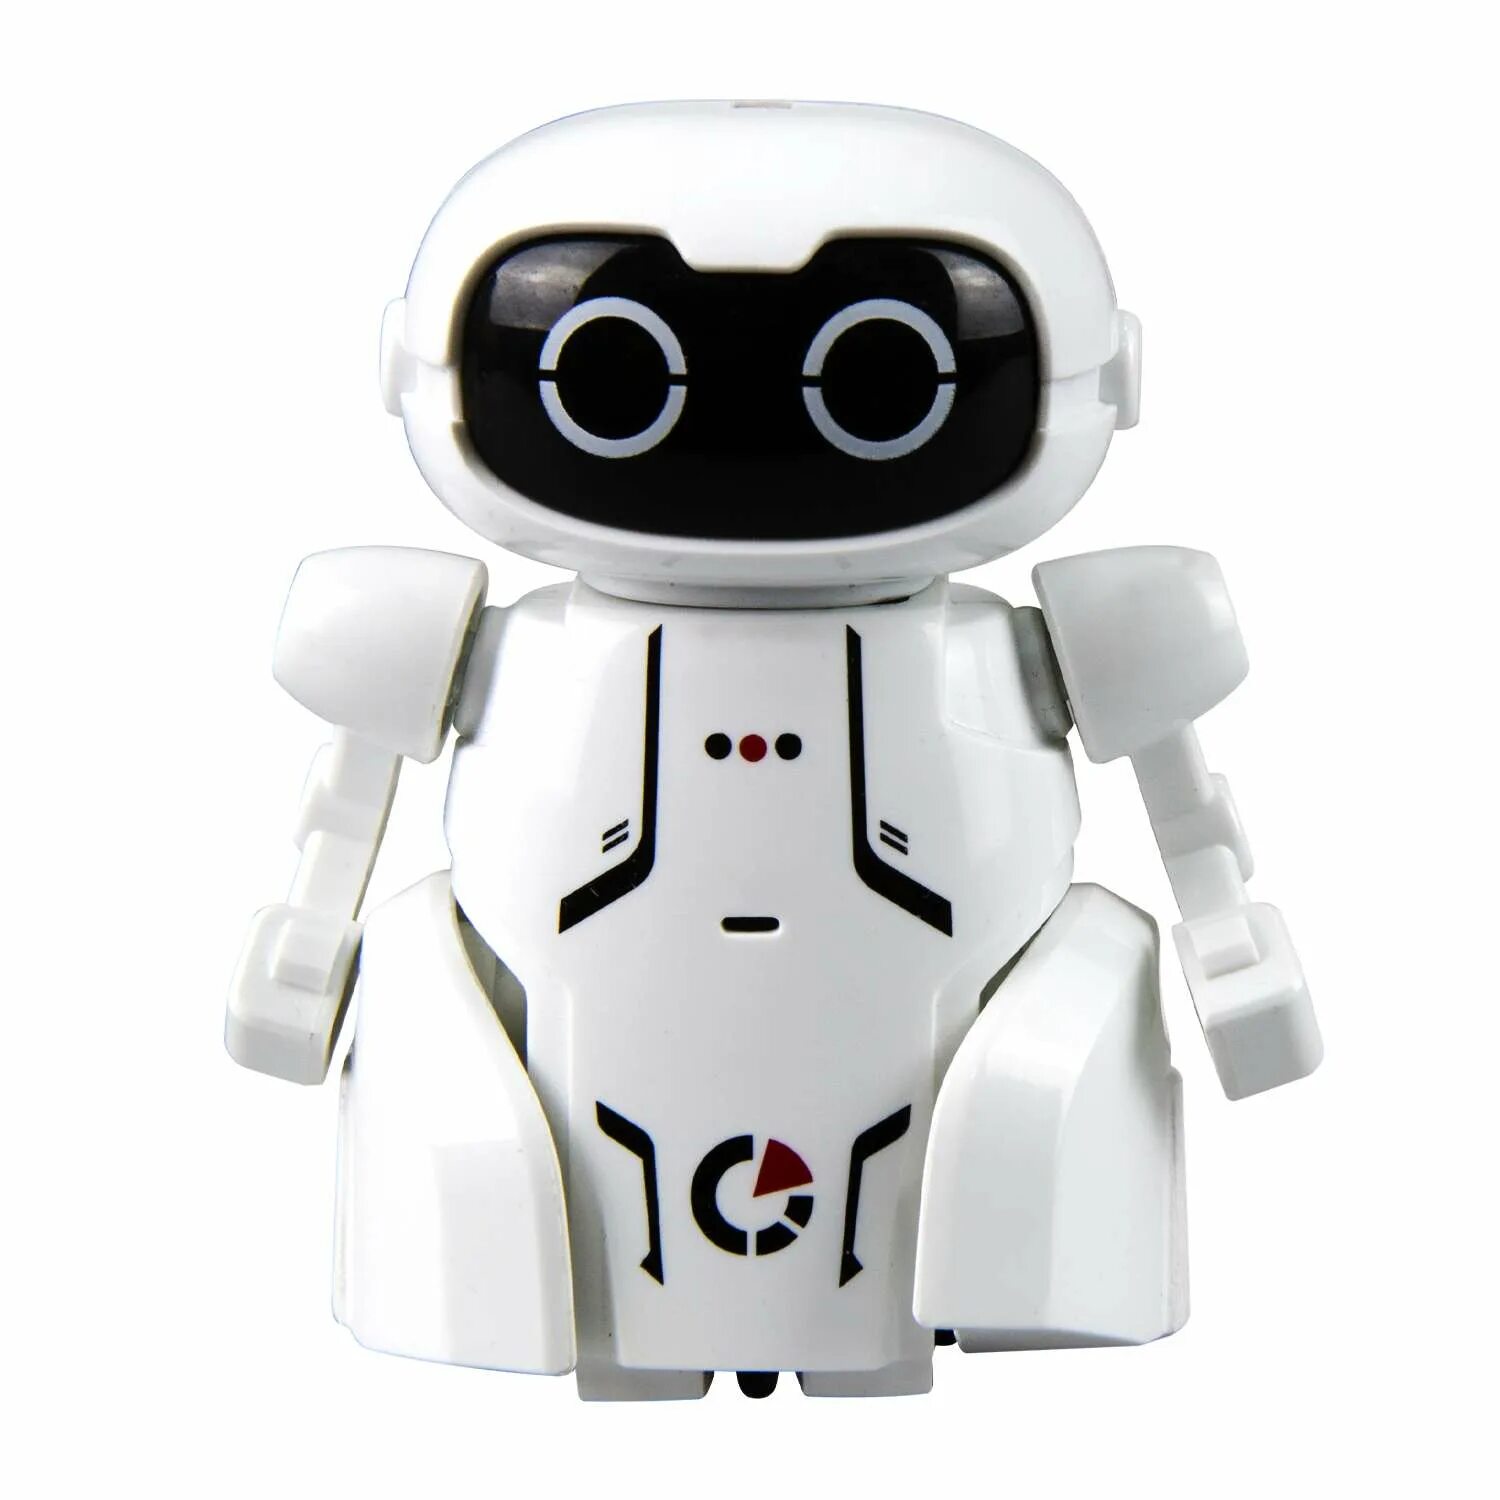 Робот Silverlit Ycoo. Ycoo робот Мэйз брейкер. Робот Ycoo Neo мини. Ycoo мини робот Мейз брейкер.